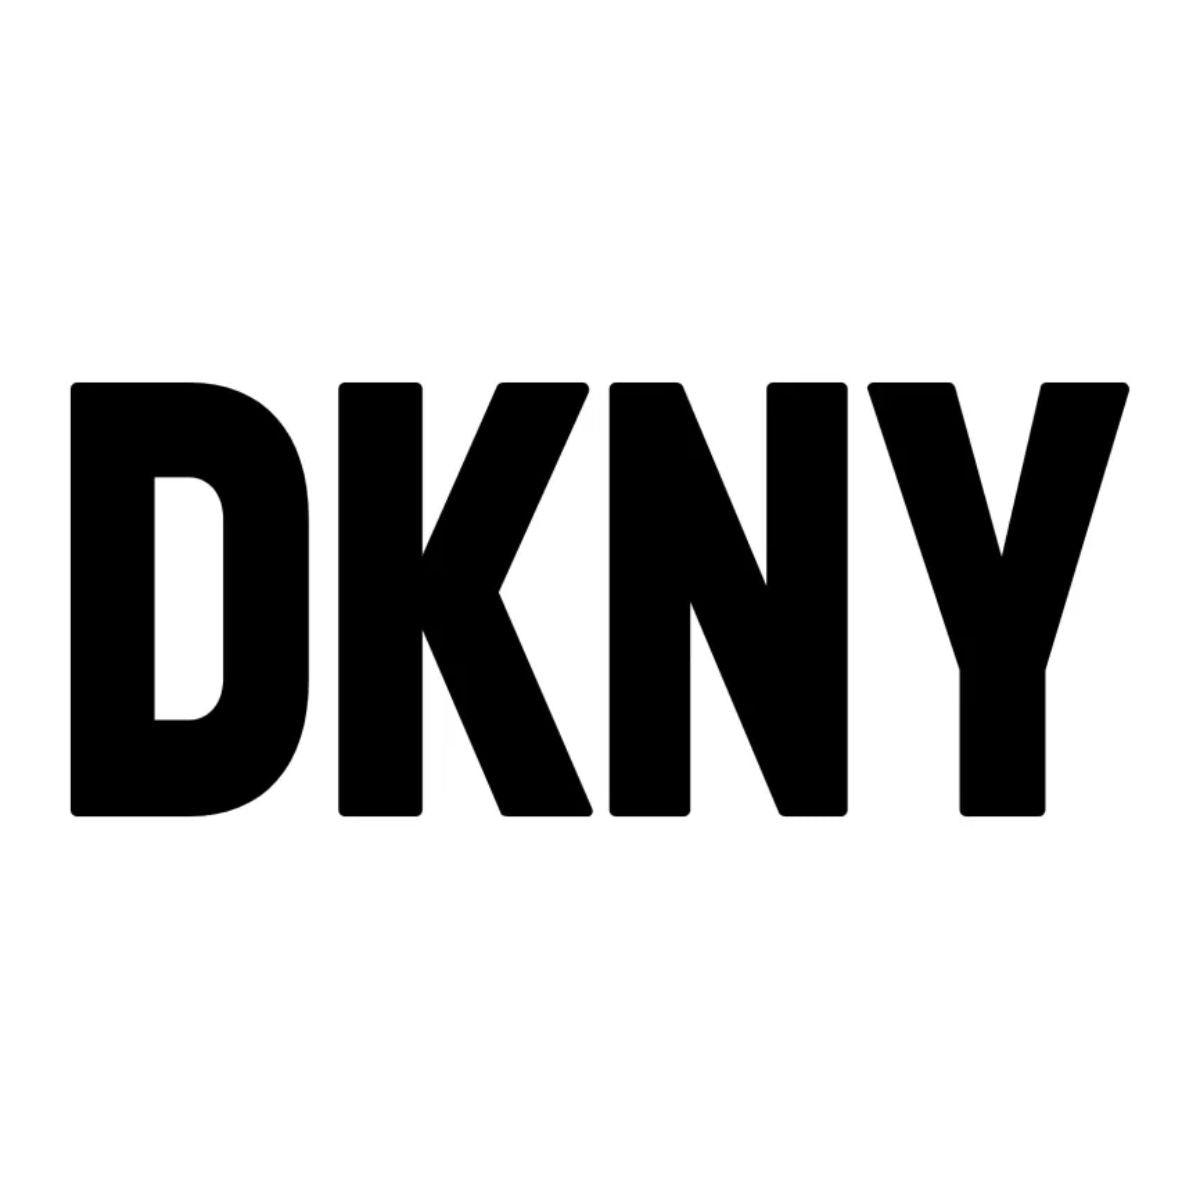 DKNY - Gielen Lederwaren Bussum